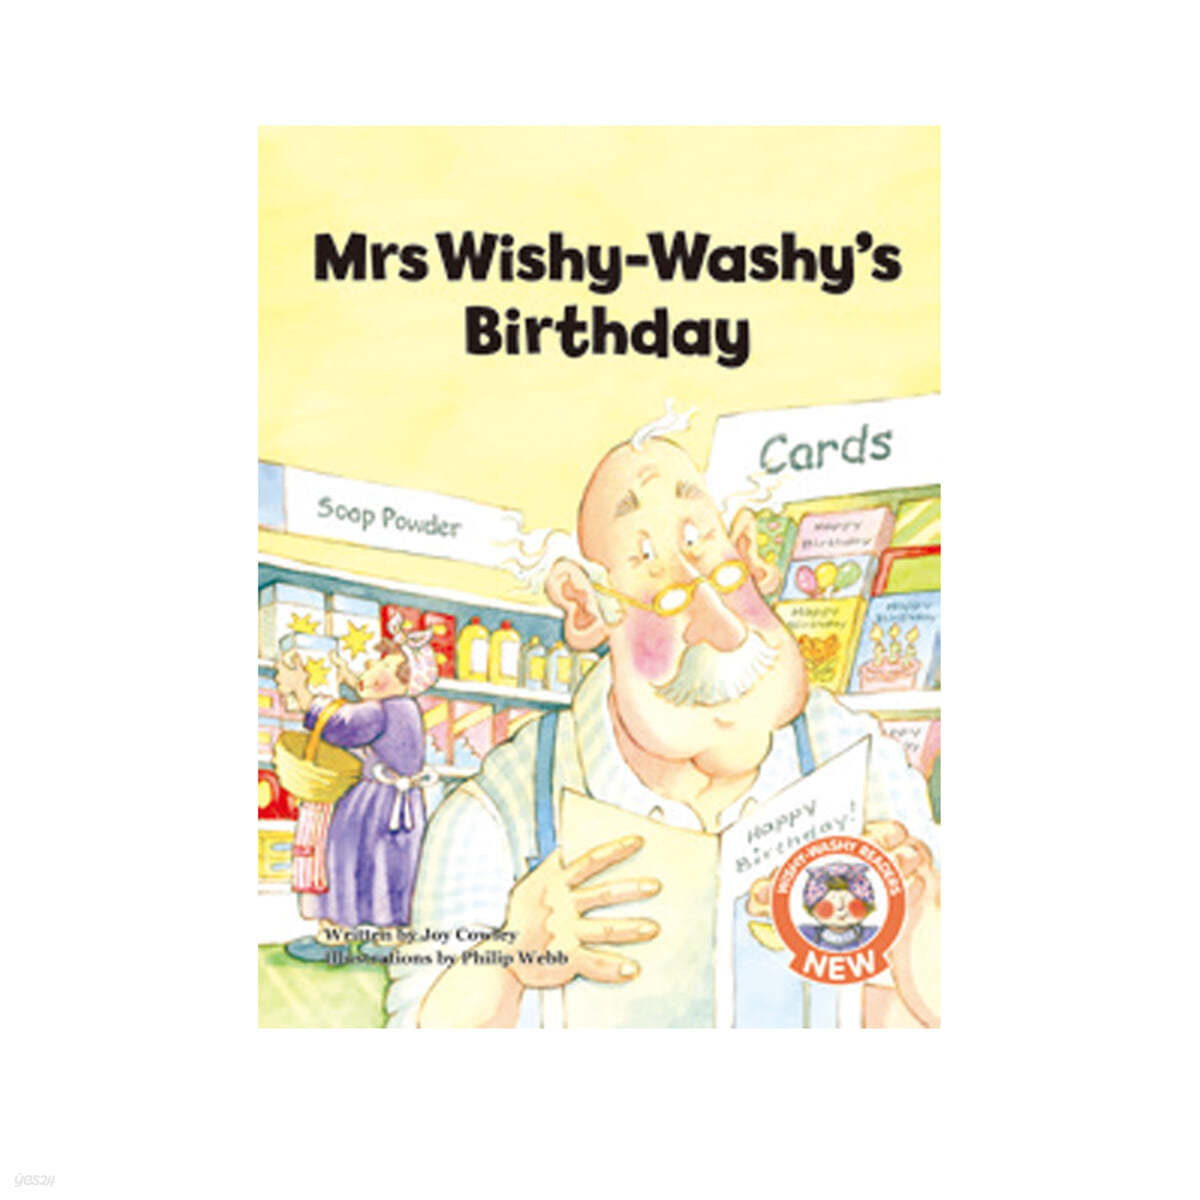 Mrs wishy-washys birthday